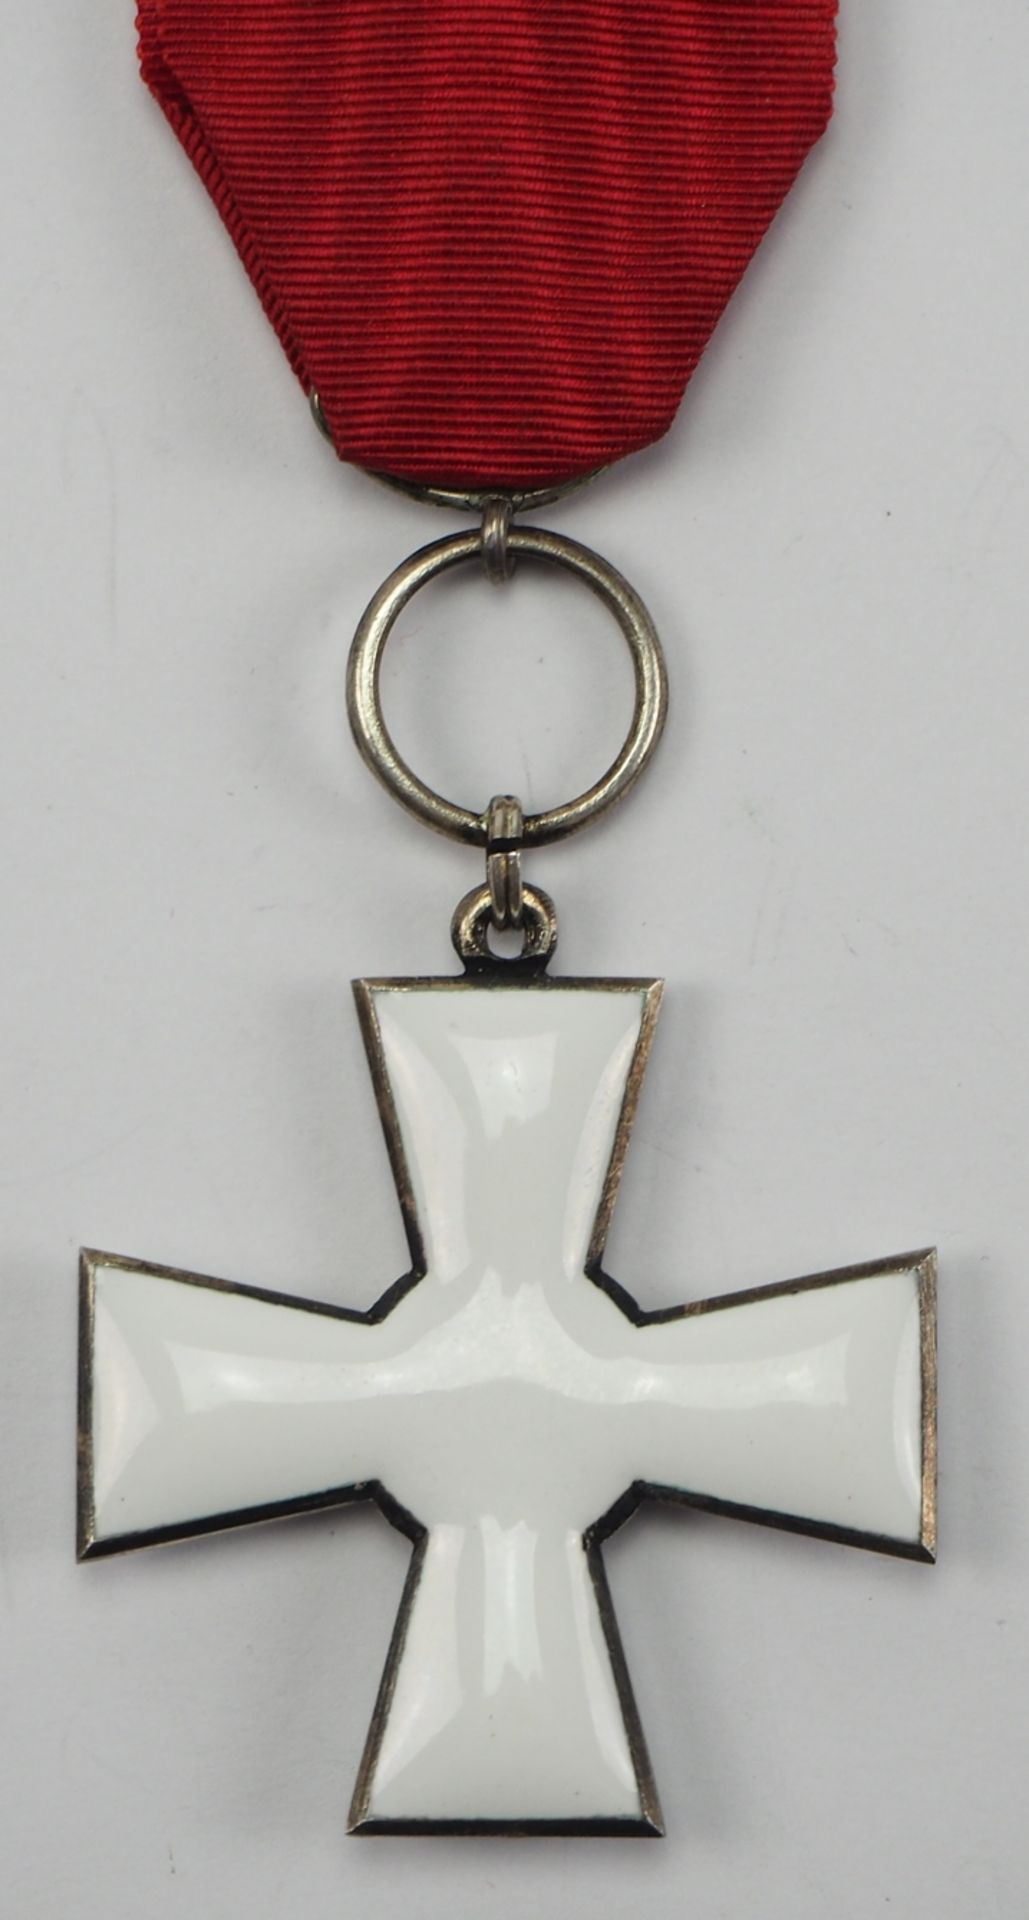 Finnland: Orden des finnischen Löwen, Ritterkreuz. - Image 2 of 2